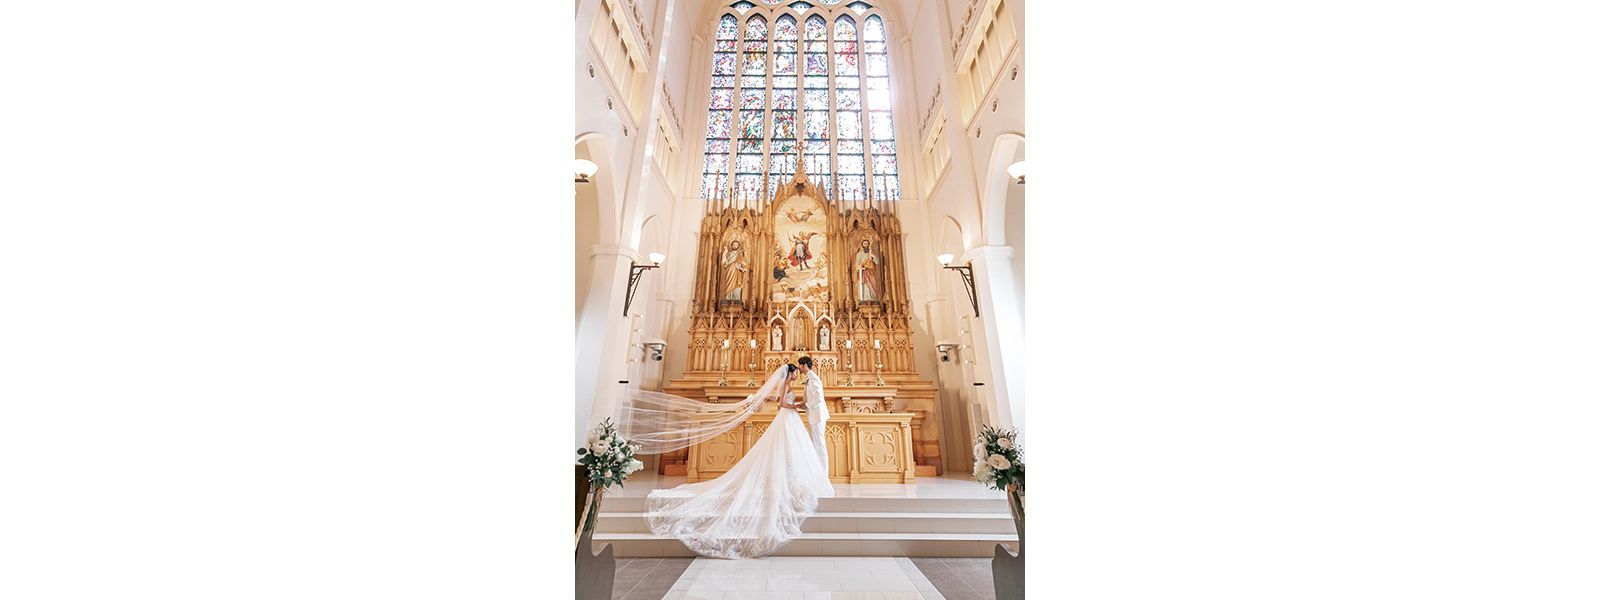 花嫁の憧れが詰まった大聖堂に注目
海外リゾートで過ごすような一日を実現